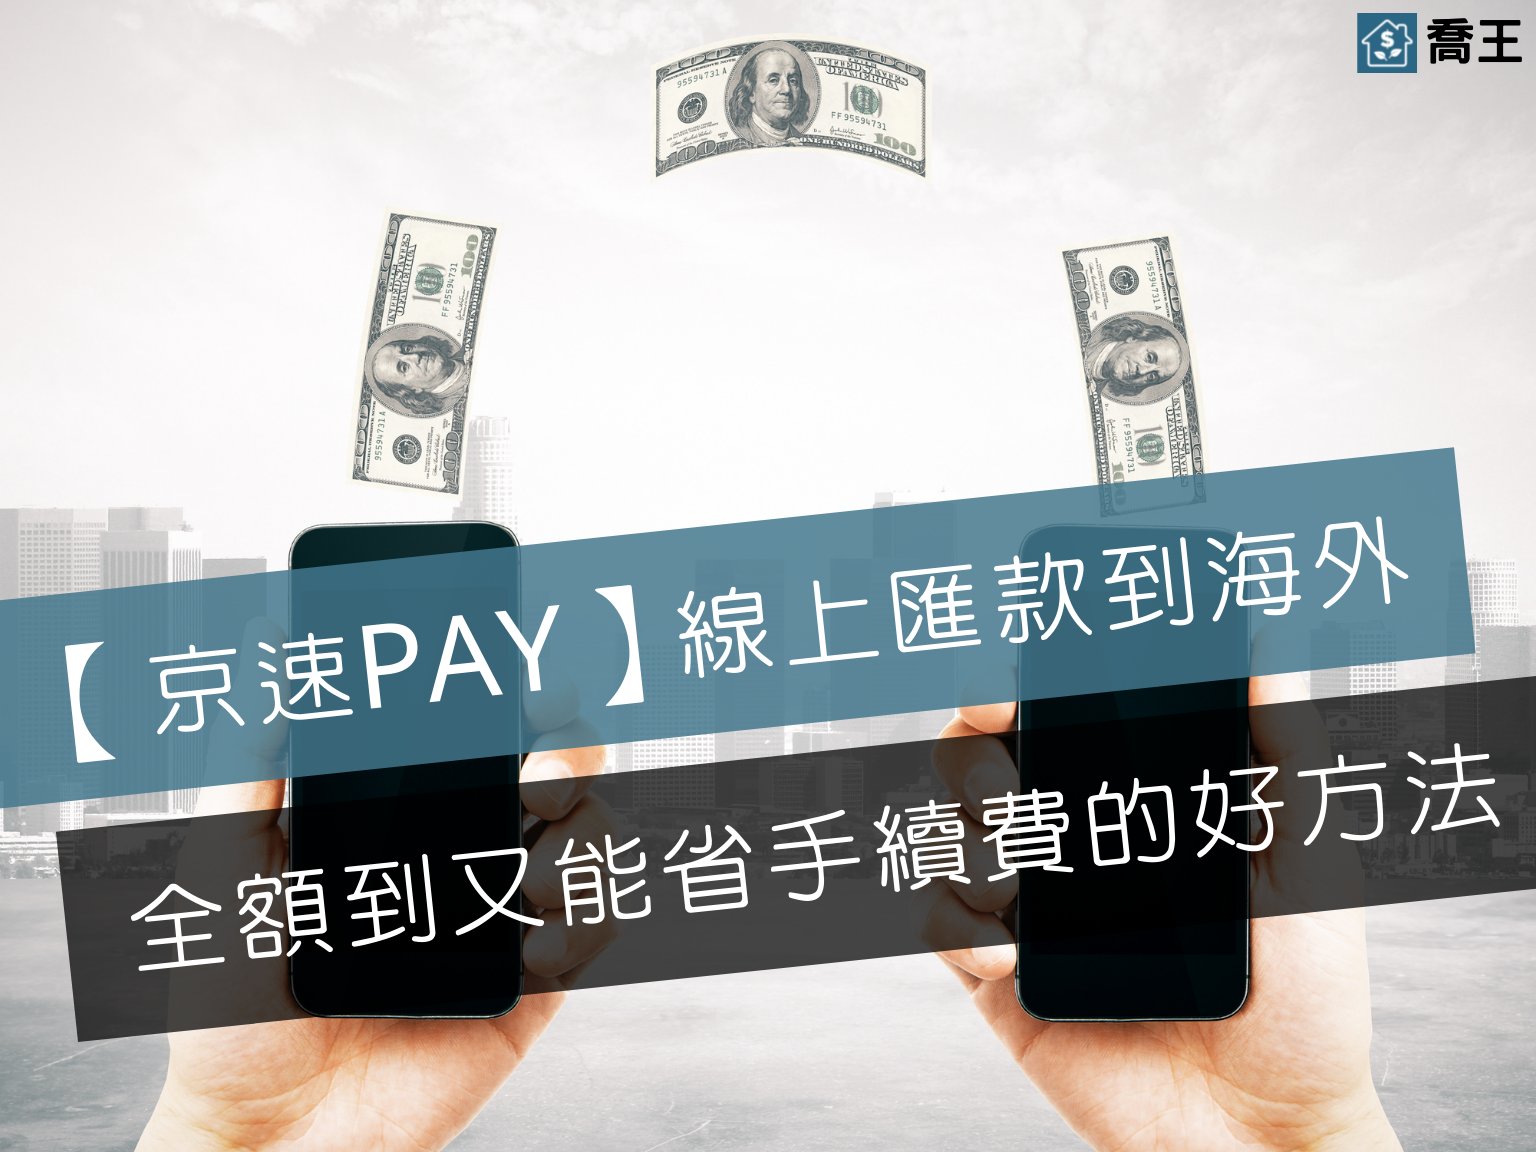 西聯匯款京速PAY 線上匯款到海外 全額到又能省手續費的好方法